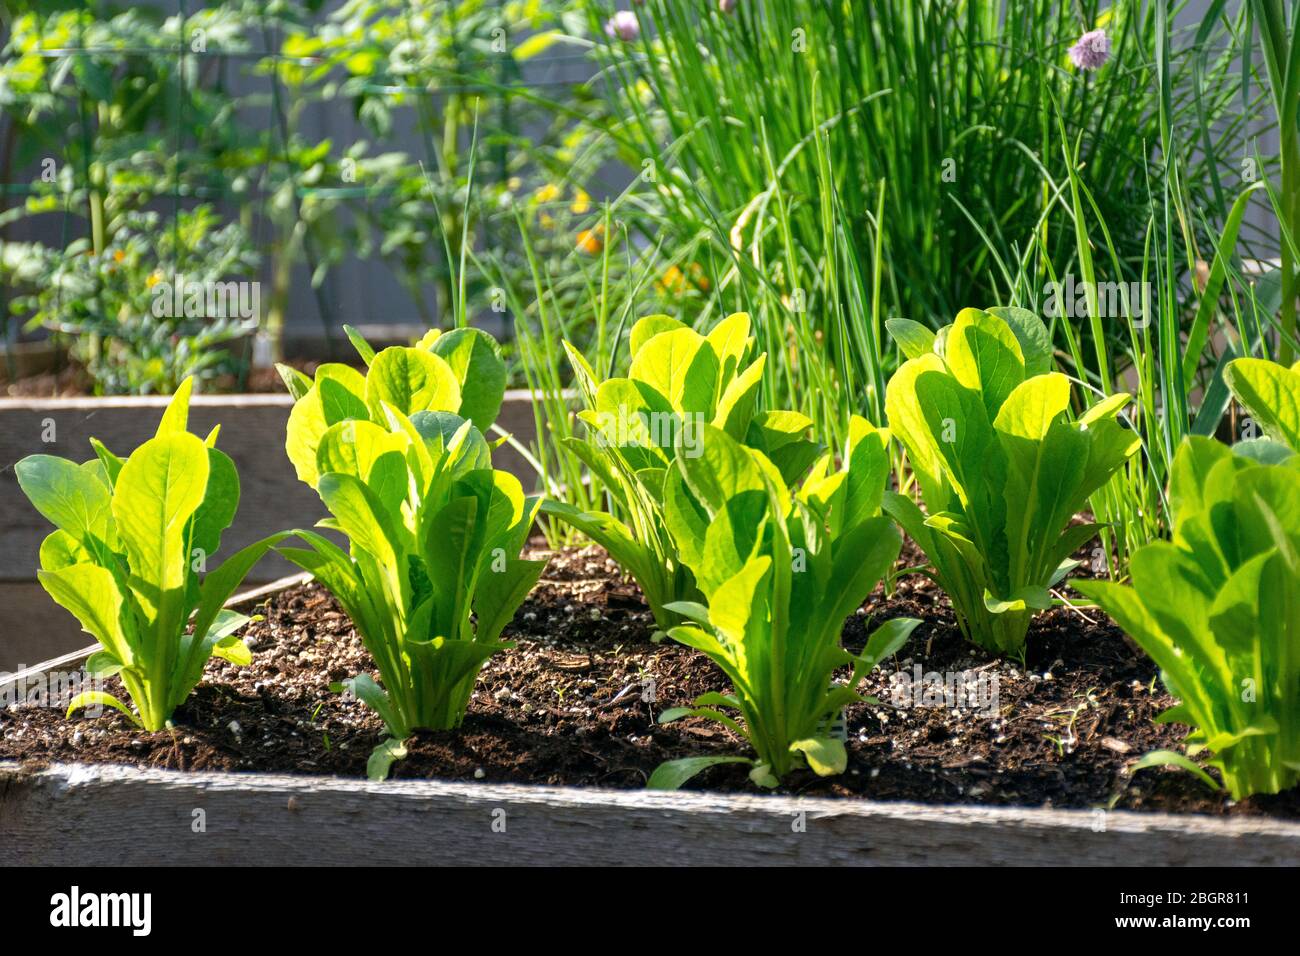 Parte de la tendencia de crecer su propio alimento, este jardín de verduras del patio trasero contiene grandes camas elevadas para cultivar verduras y hierbas durante el verano. Foto de stock